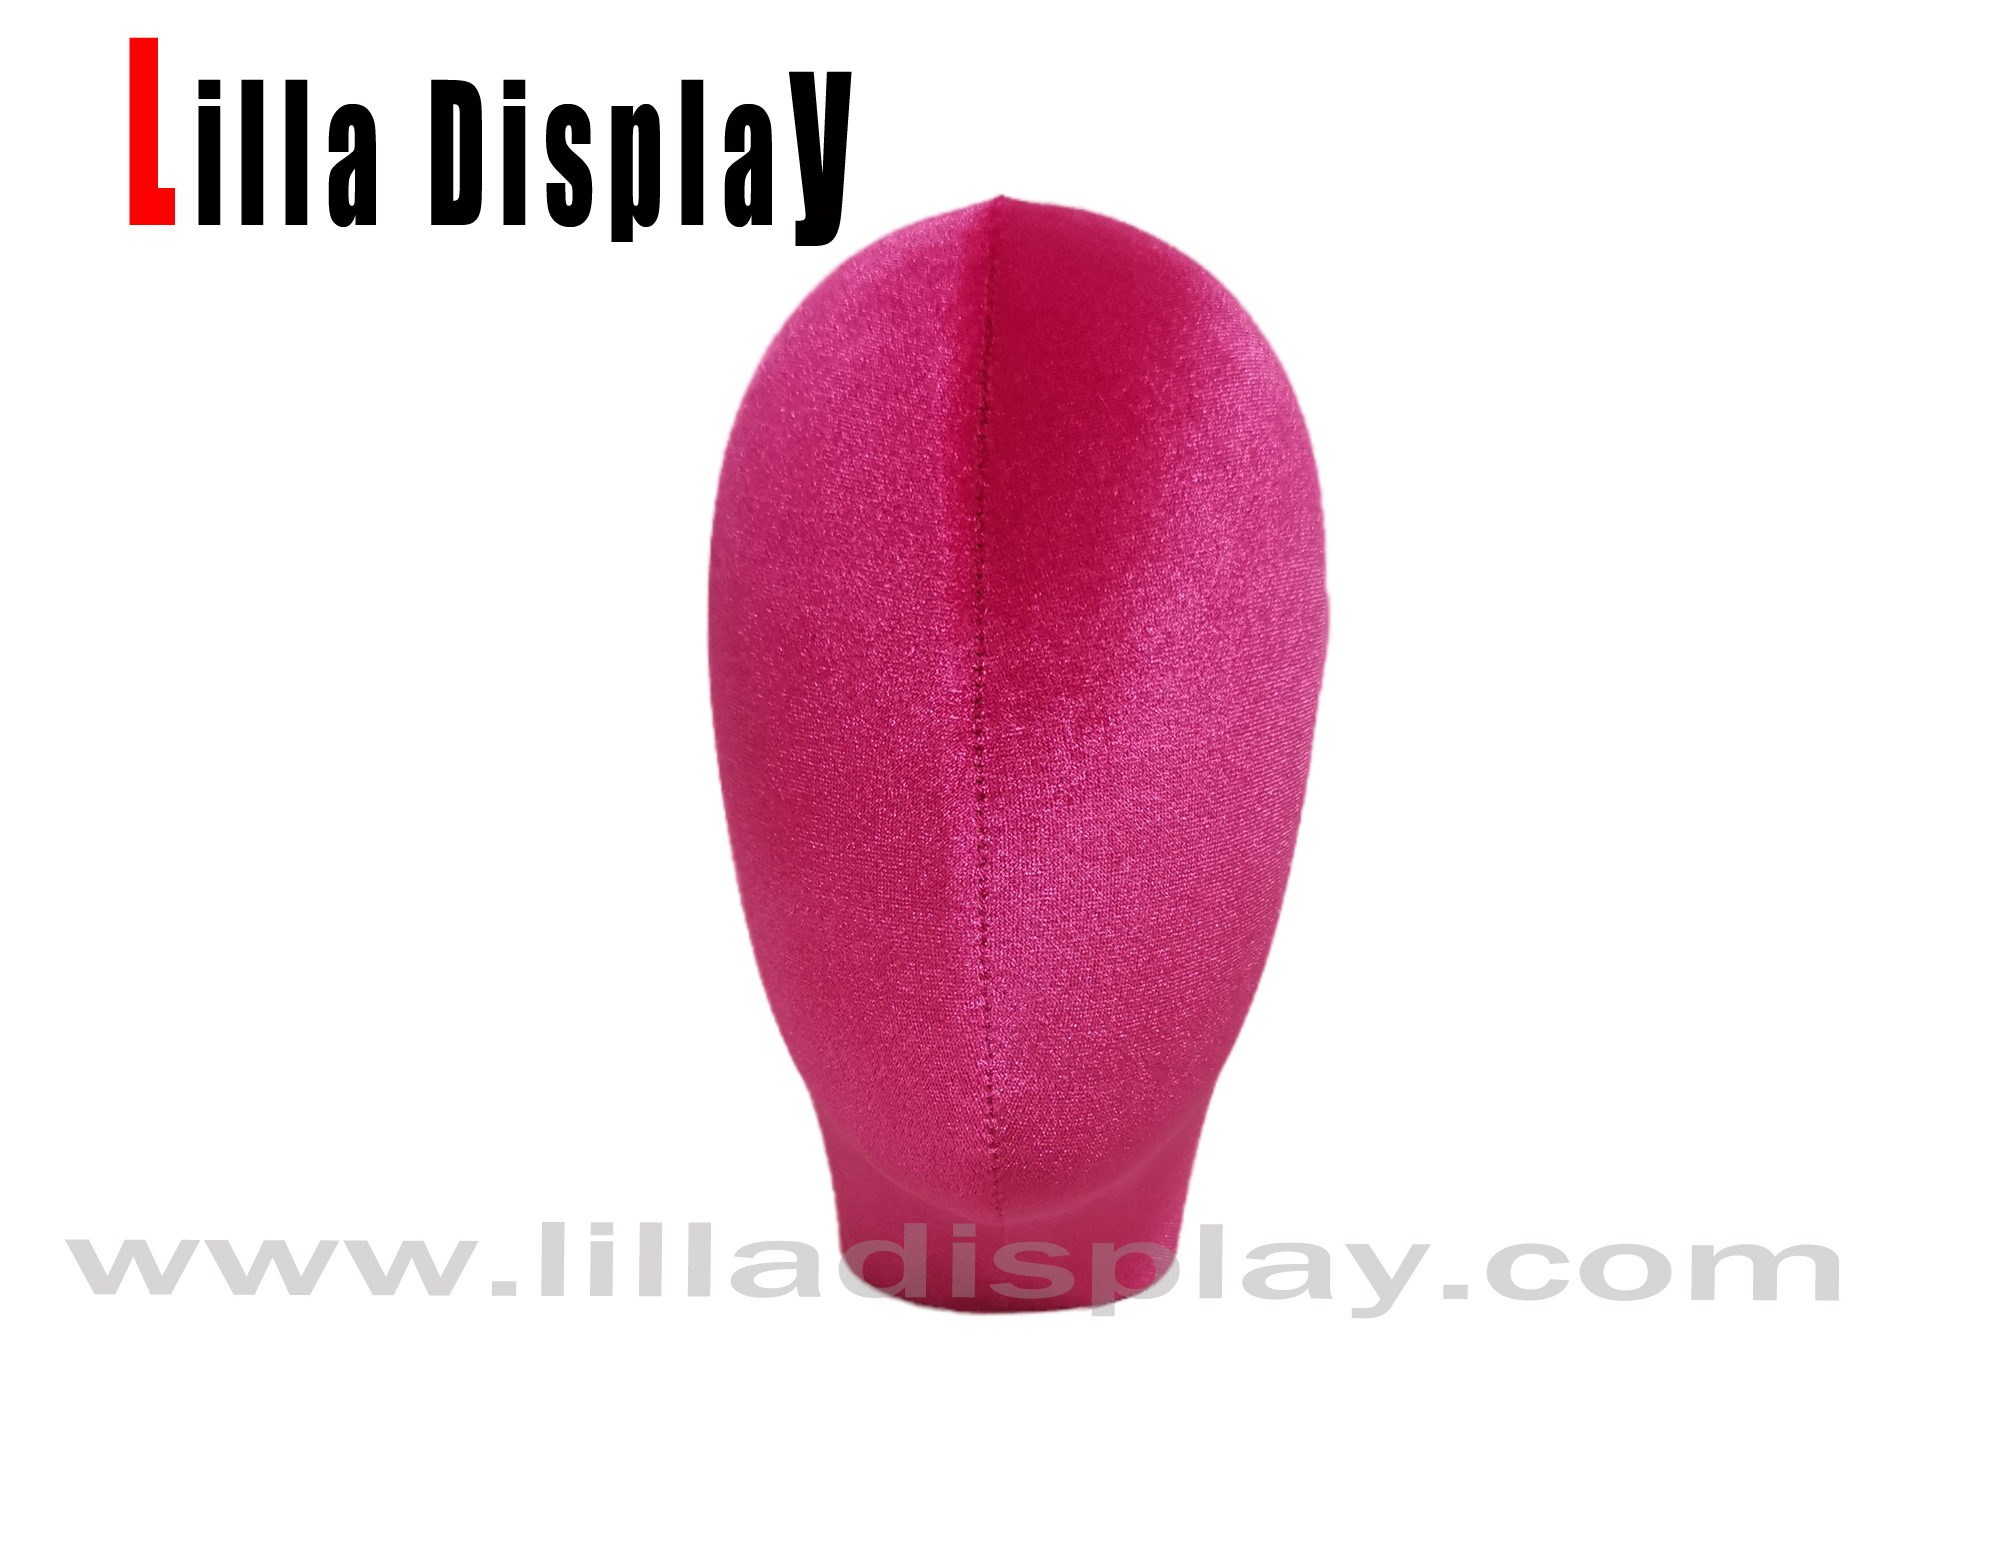 Pinkes Liliendisplay 38 usd weiblicher schaufensterpuppenkopf lucy für turban-display